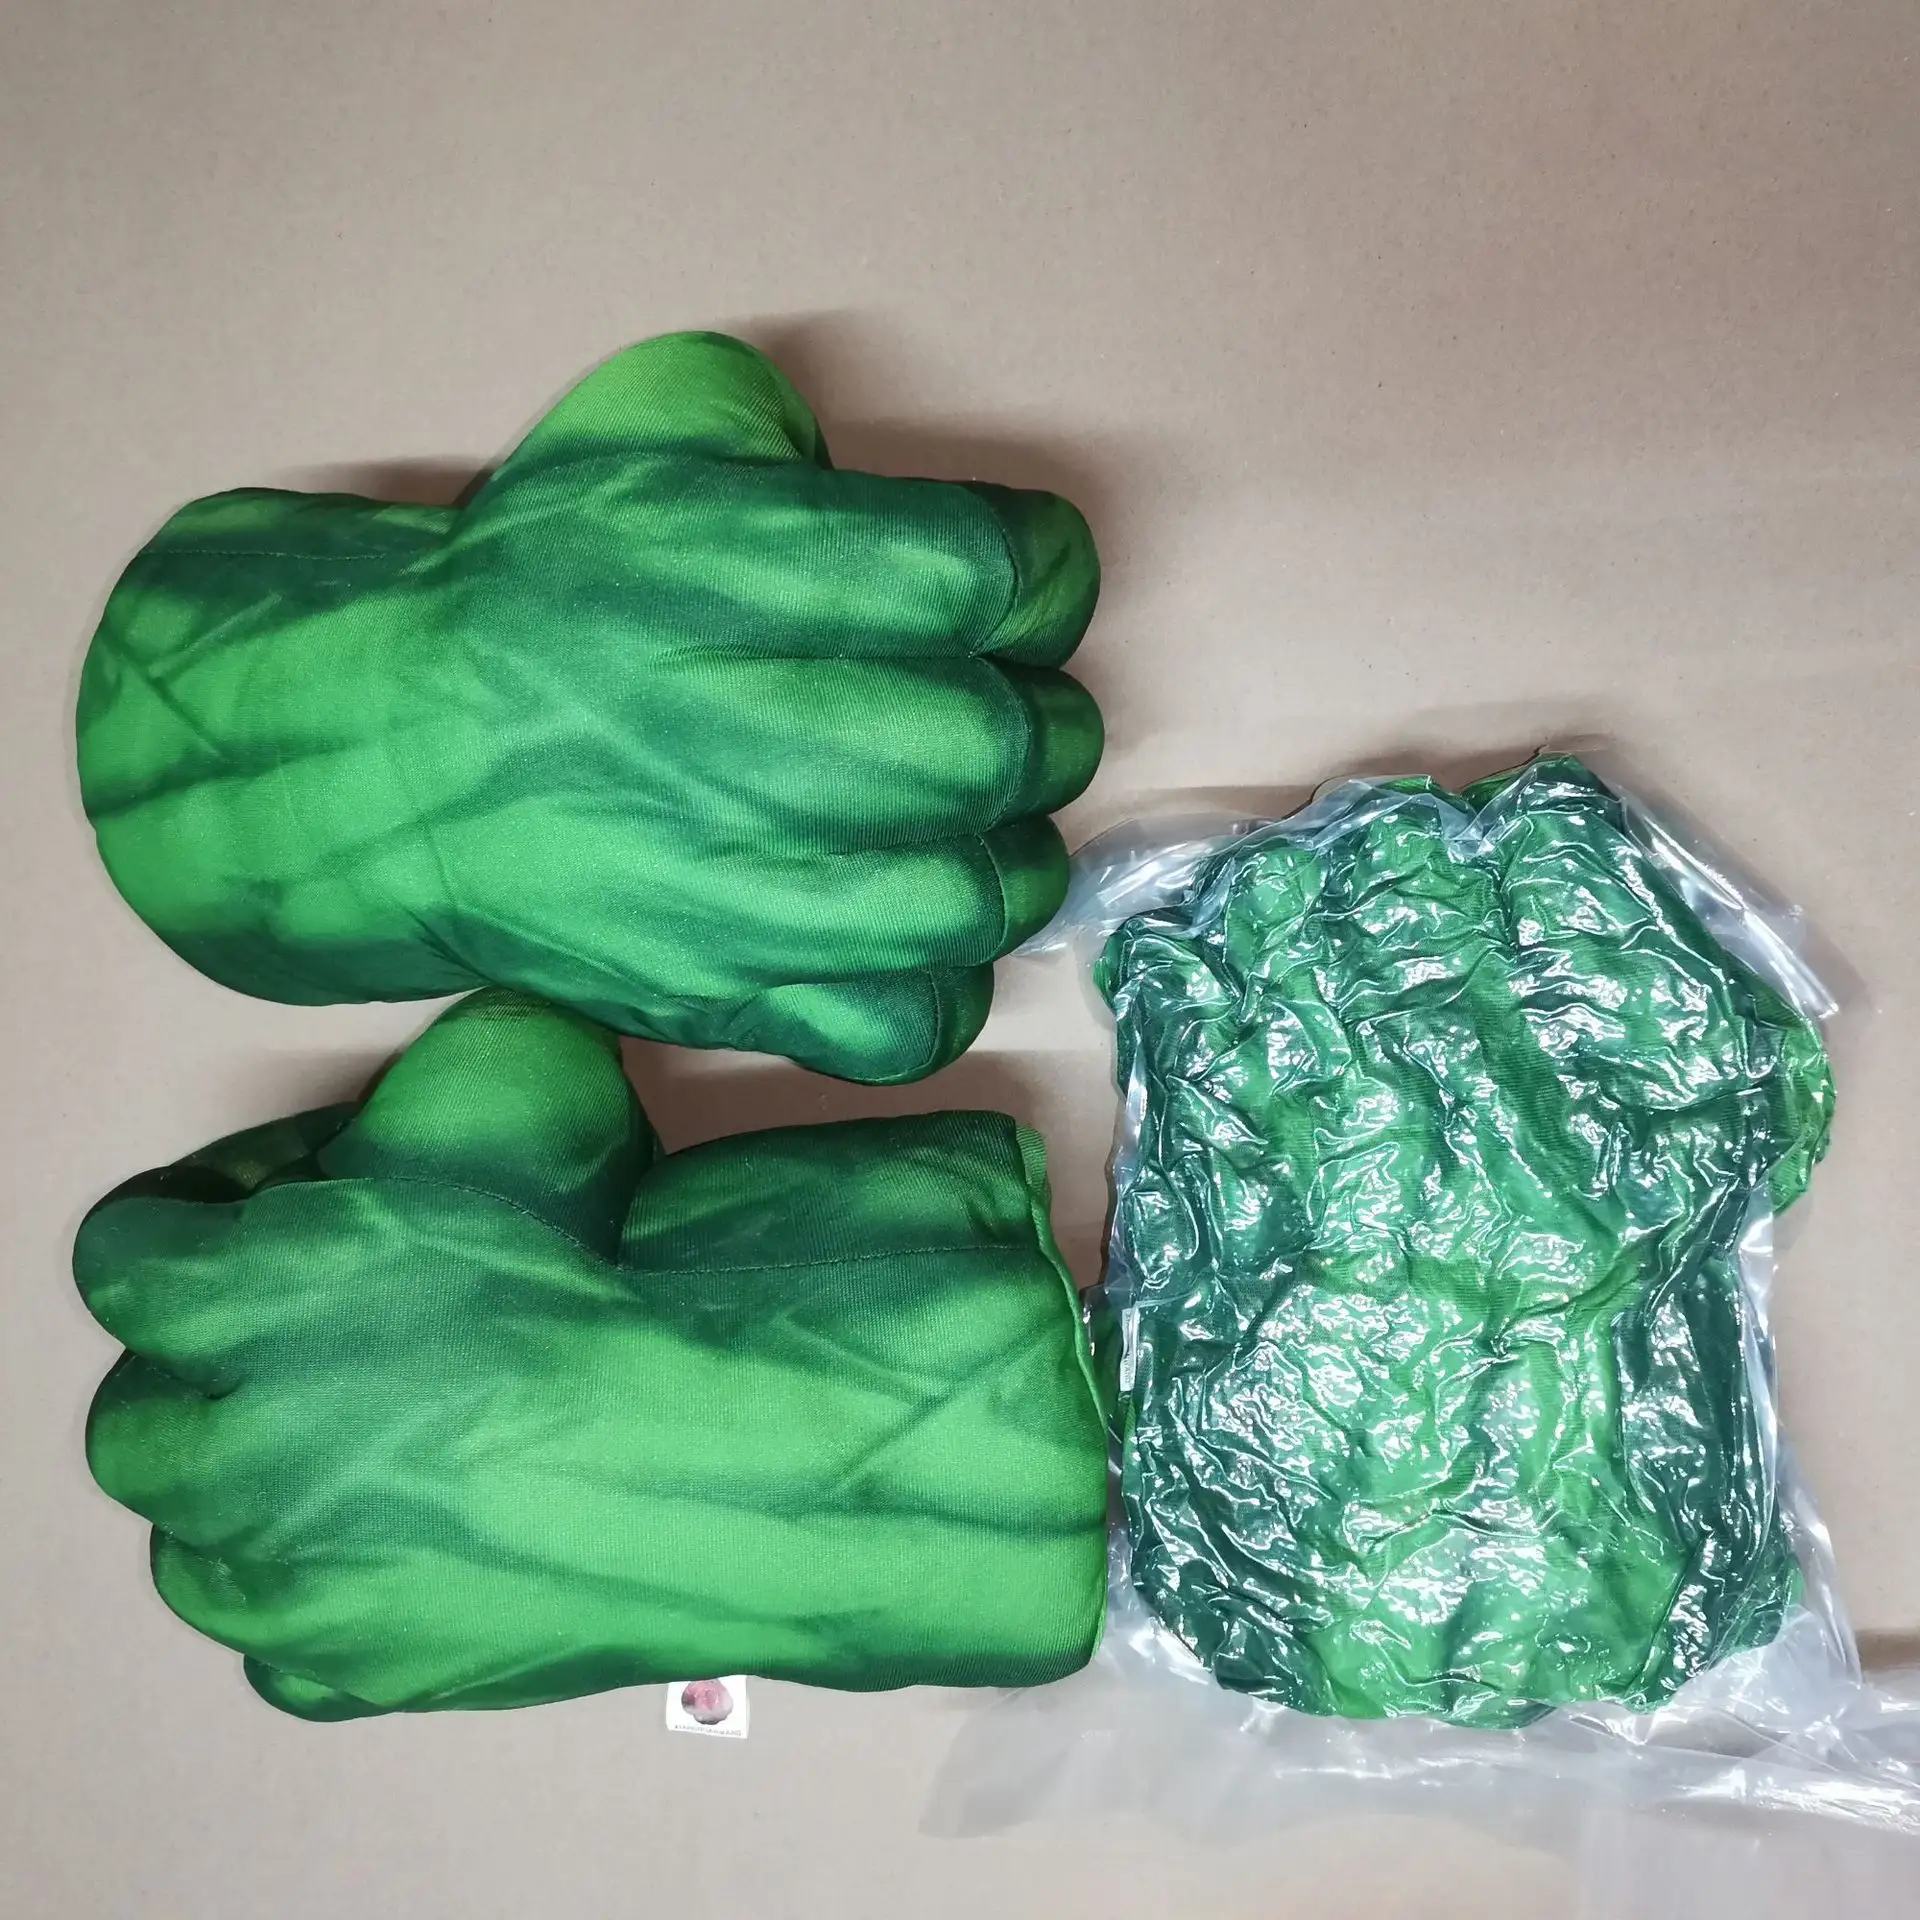 Caliente Hulk guantes de boxeo araña rojo felpa guantes de boxeo Cosplay increíble figura de superhéroe niños guantes de boxeo regalo de dibujos animados